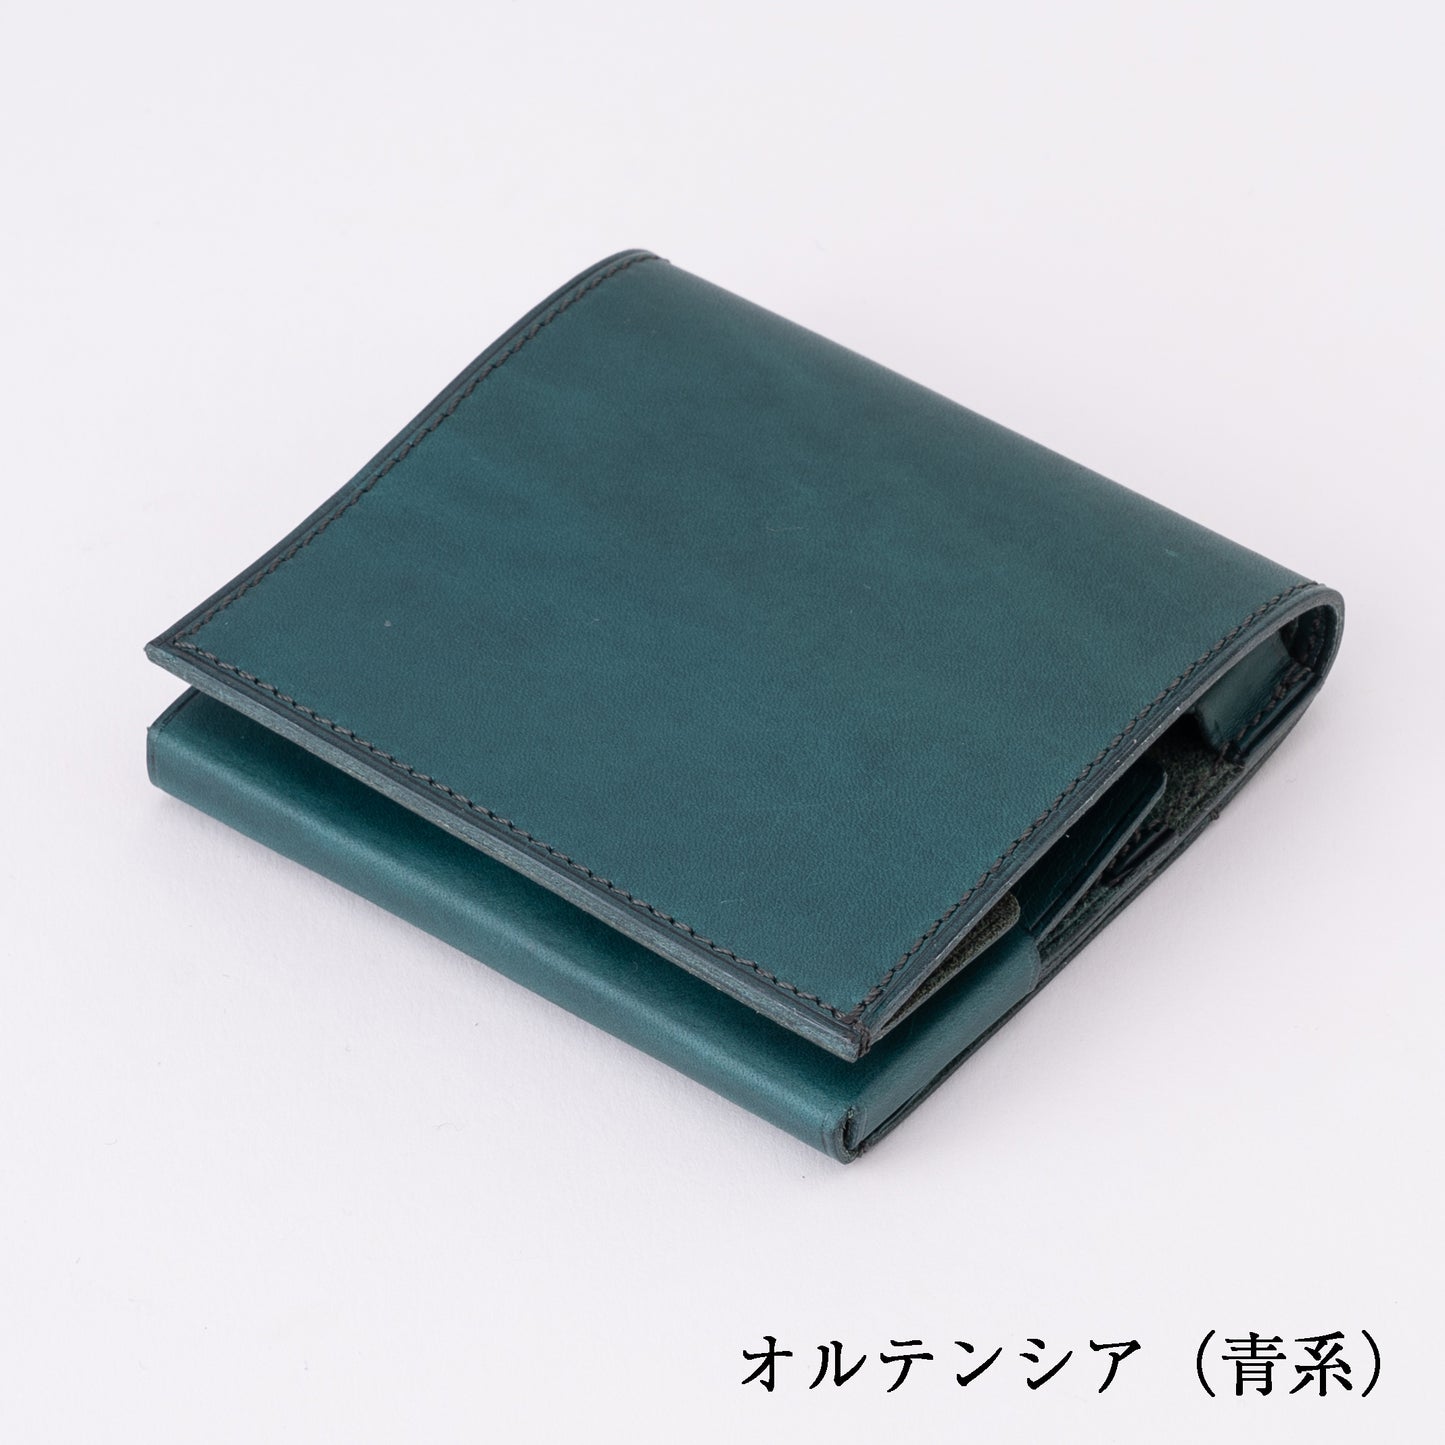 もっと 小さく薄い財布 dritto 2 thin